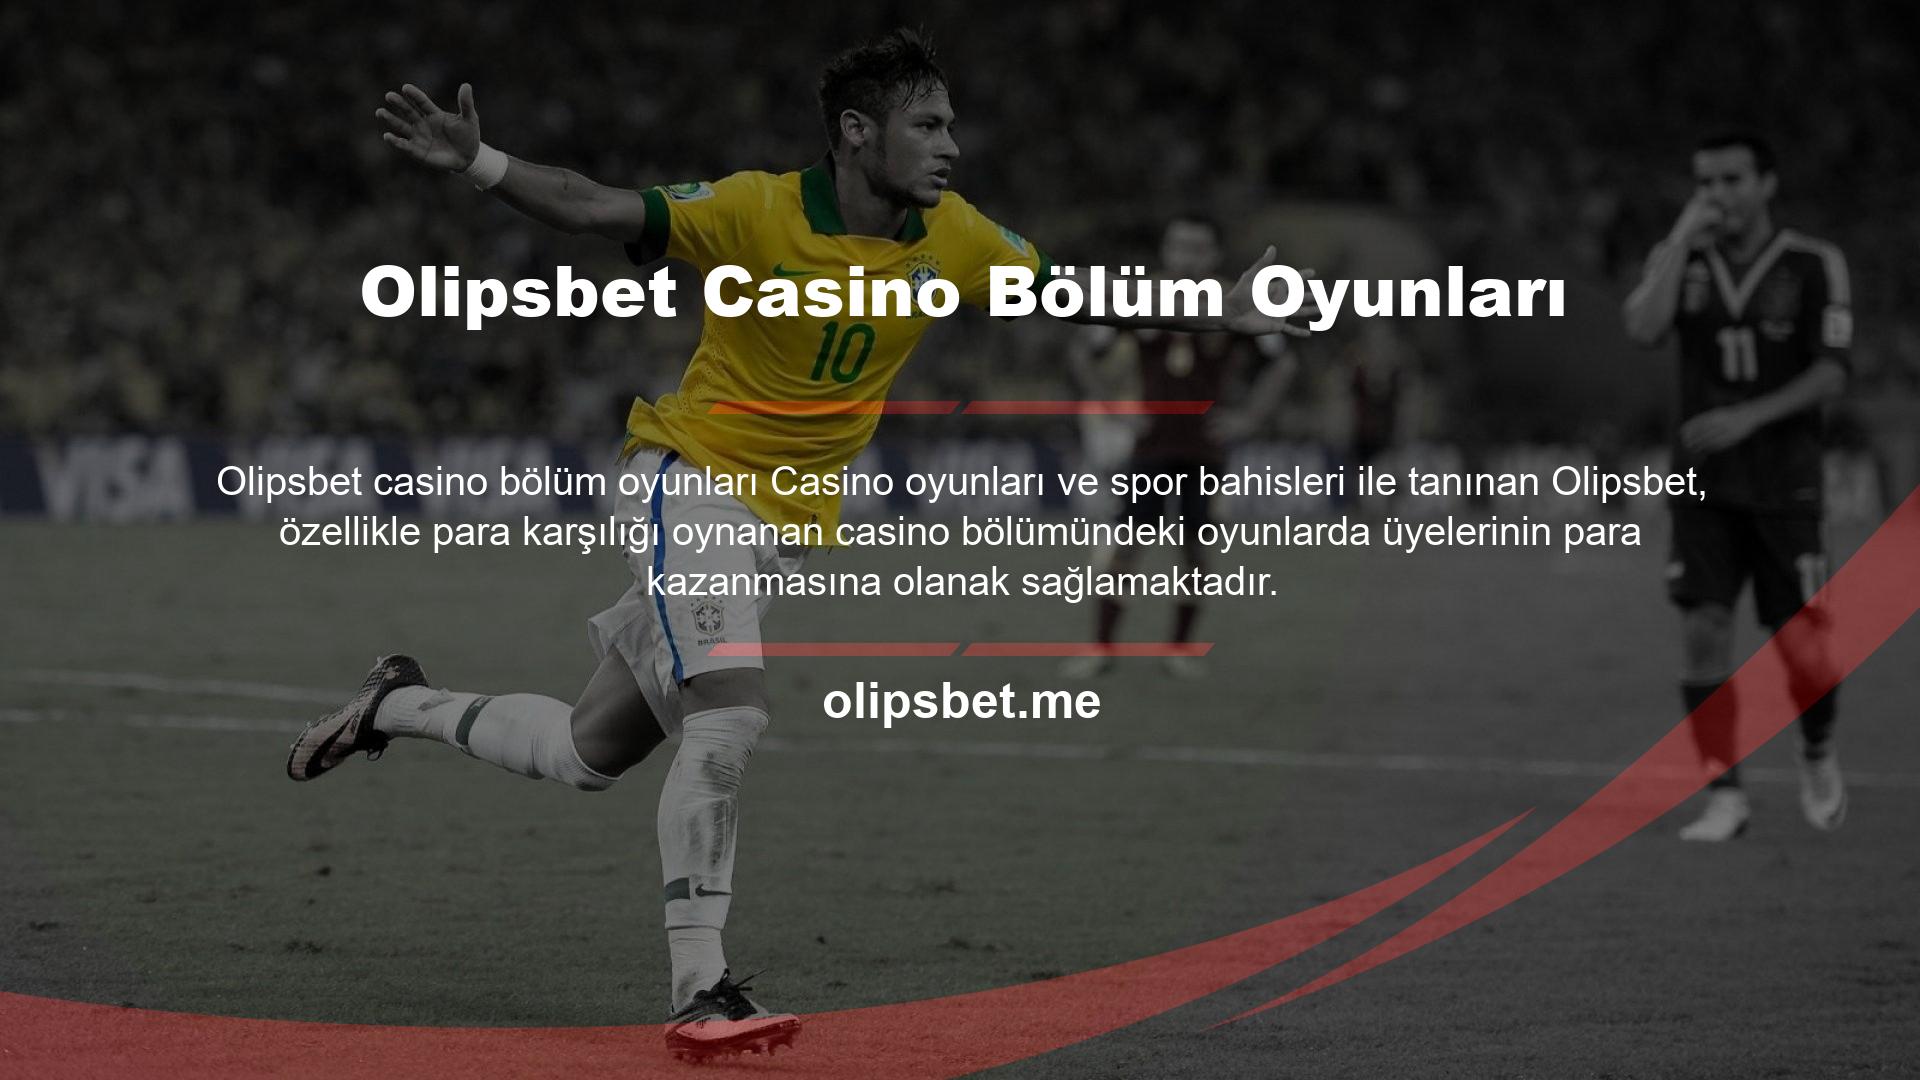 Olipsbet Casino Bölüm Oyunları